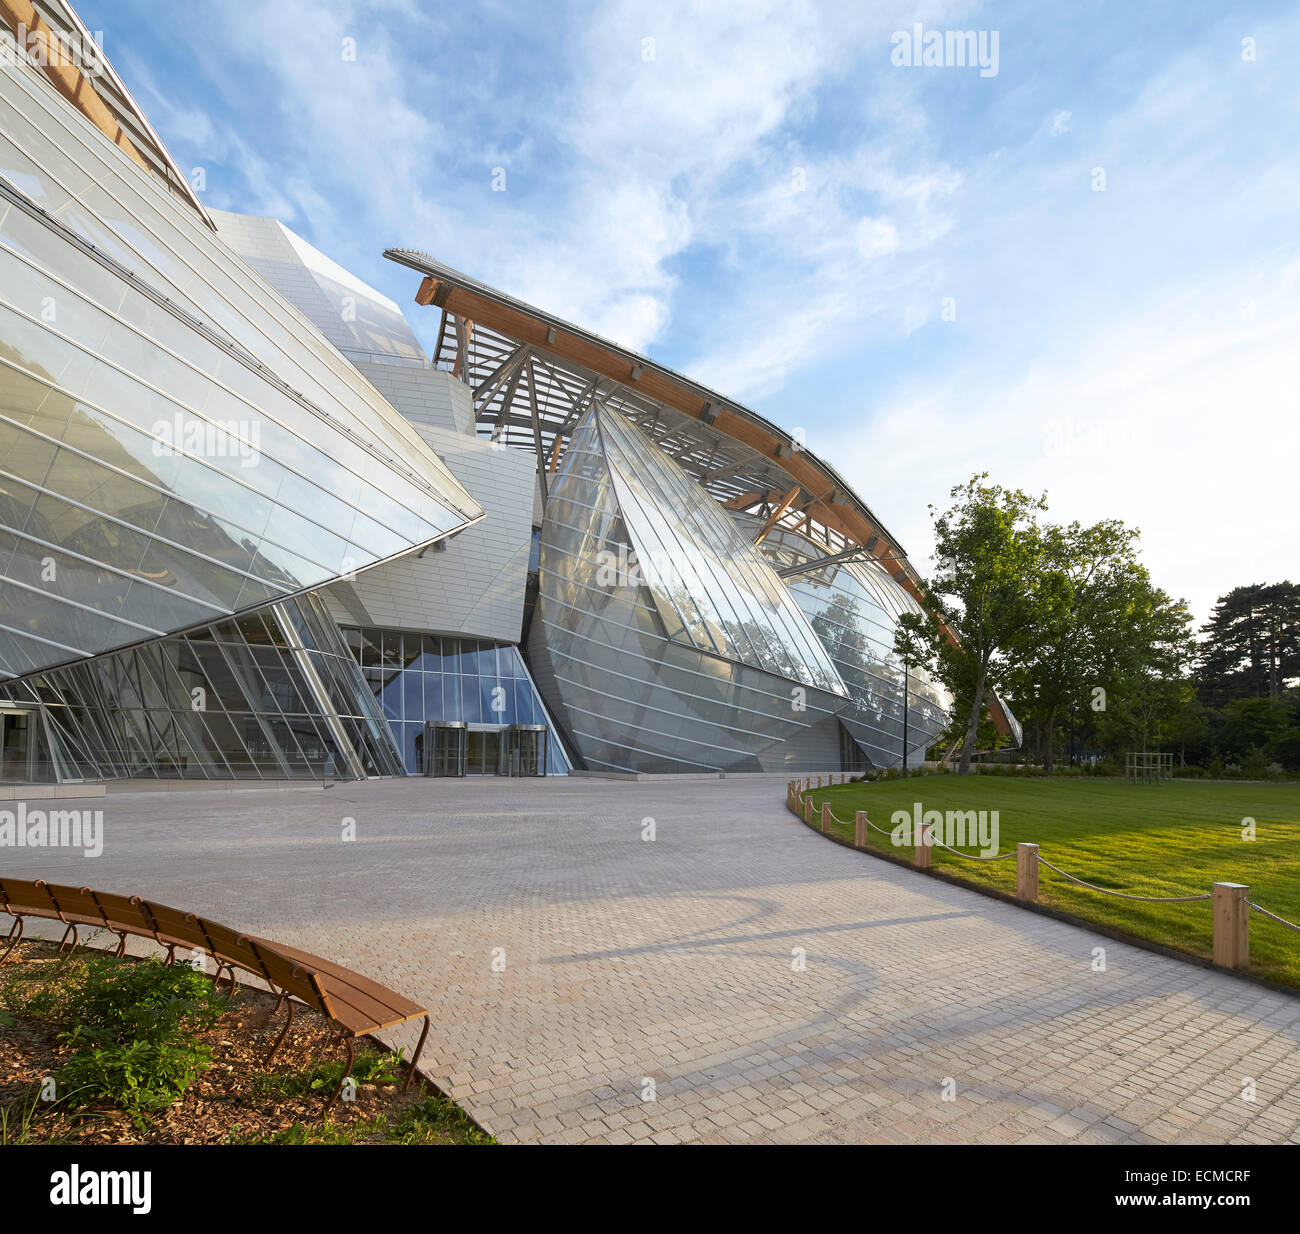 Fondation Louis Vuitton, Paris, France. Architect: Gehry Partners Stock Photo - Alamy